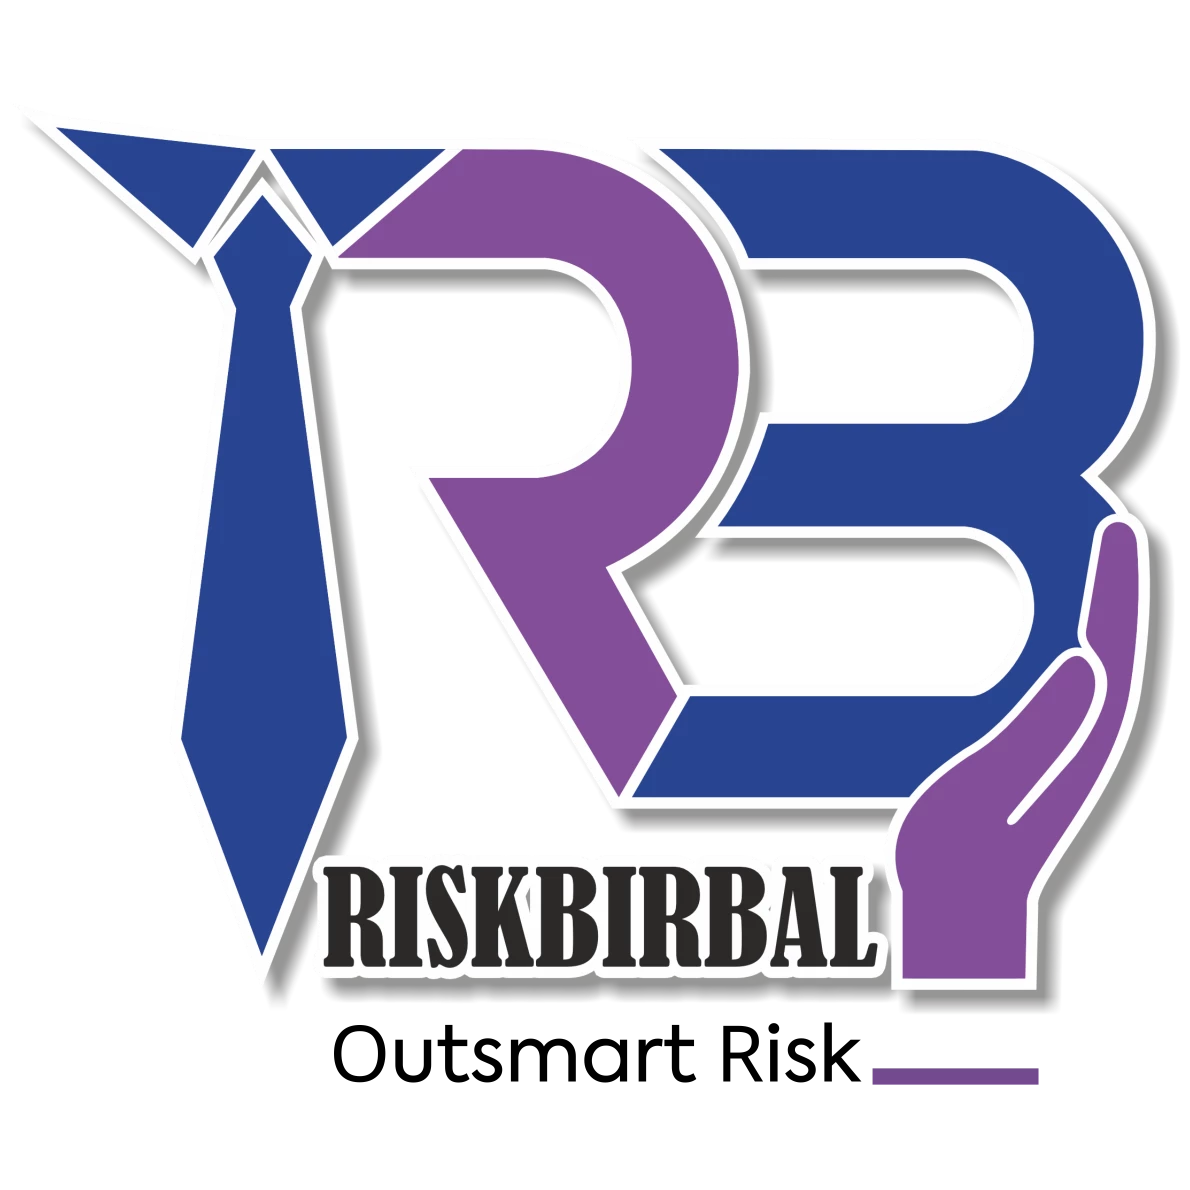 Riskbirbal logo